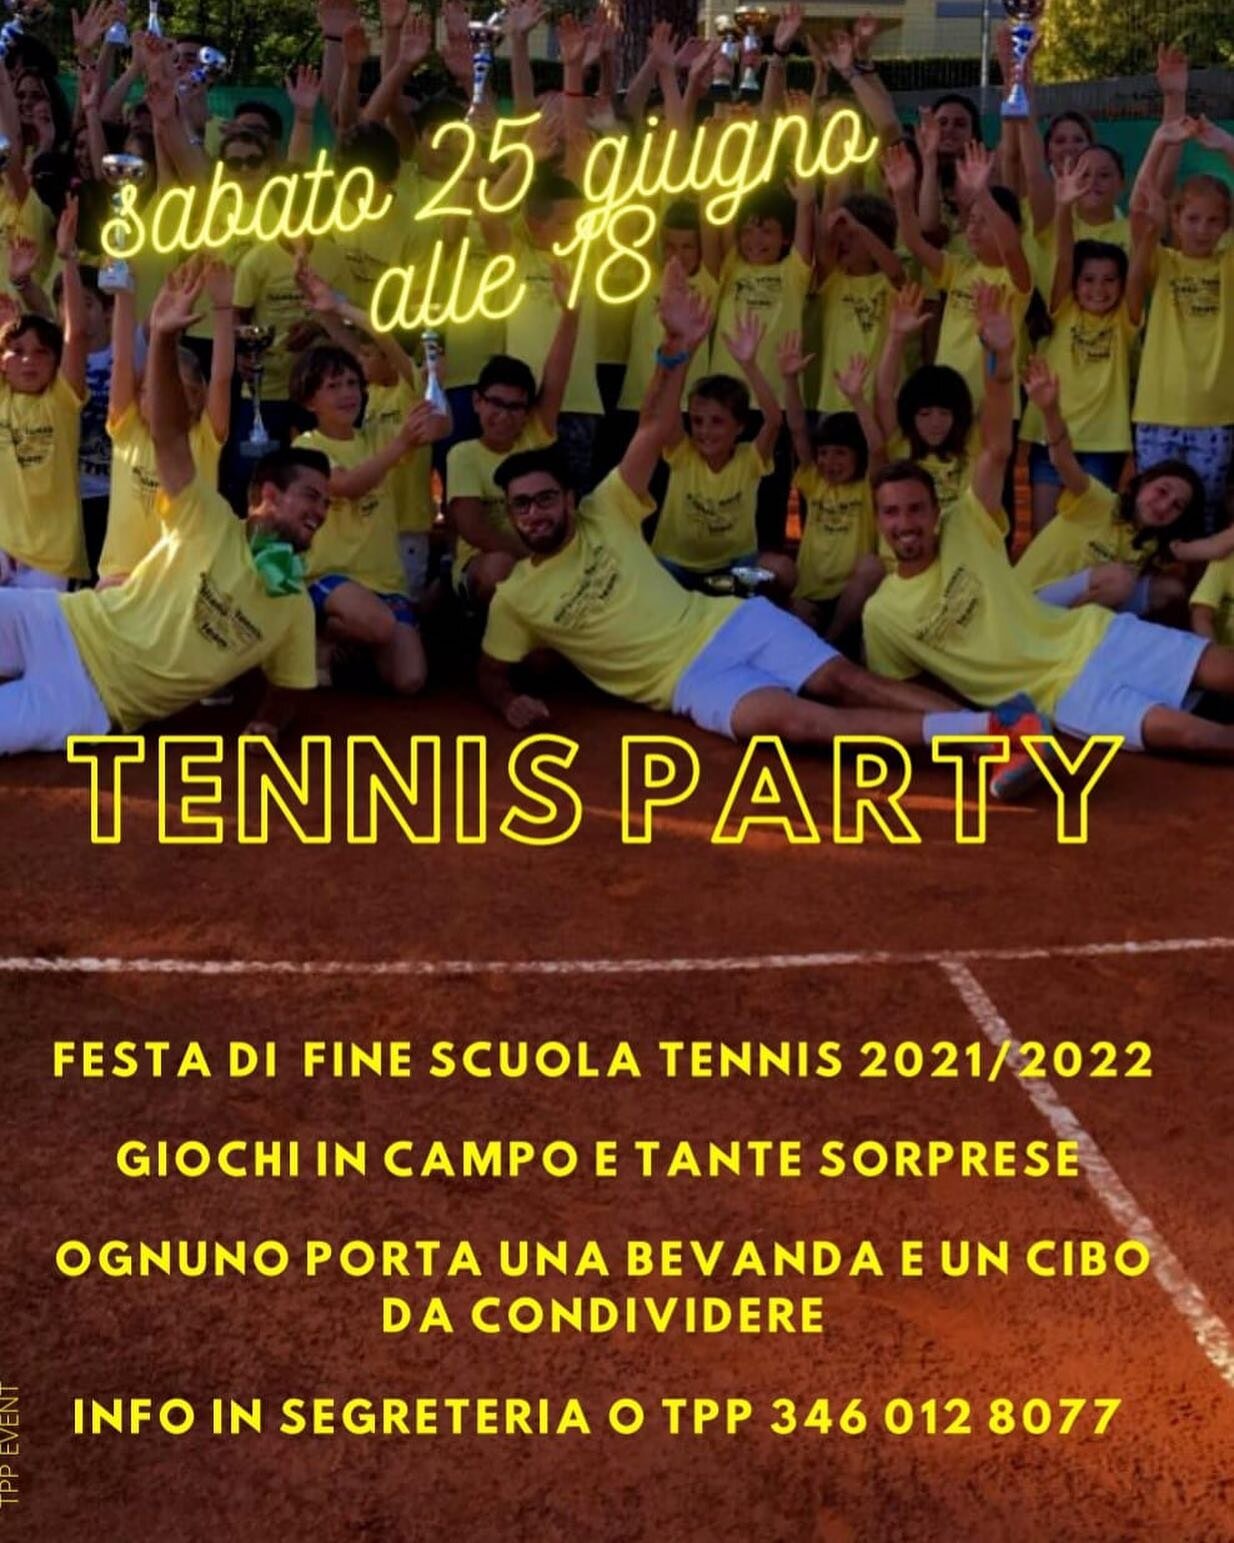 Sabato 25 giugno alle 18 al Tennis Club Sporting . Festa di Fine Scuola Tennis stagione invernale. 
Non mancate!